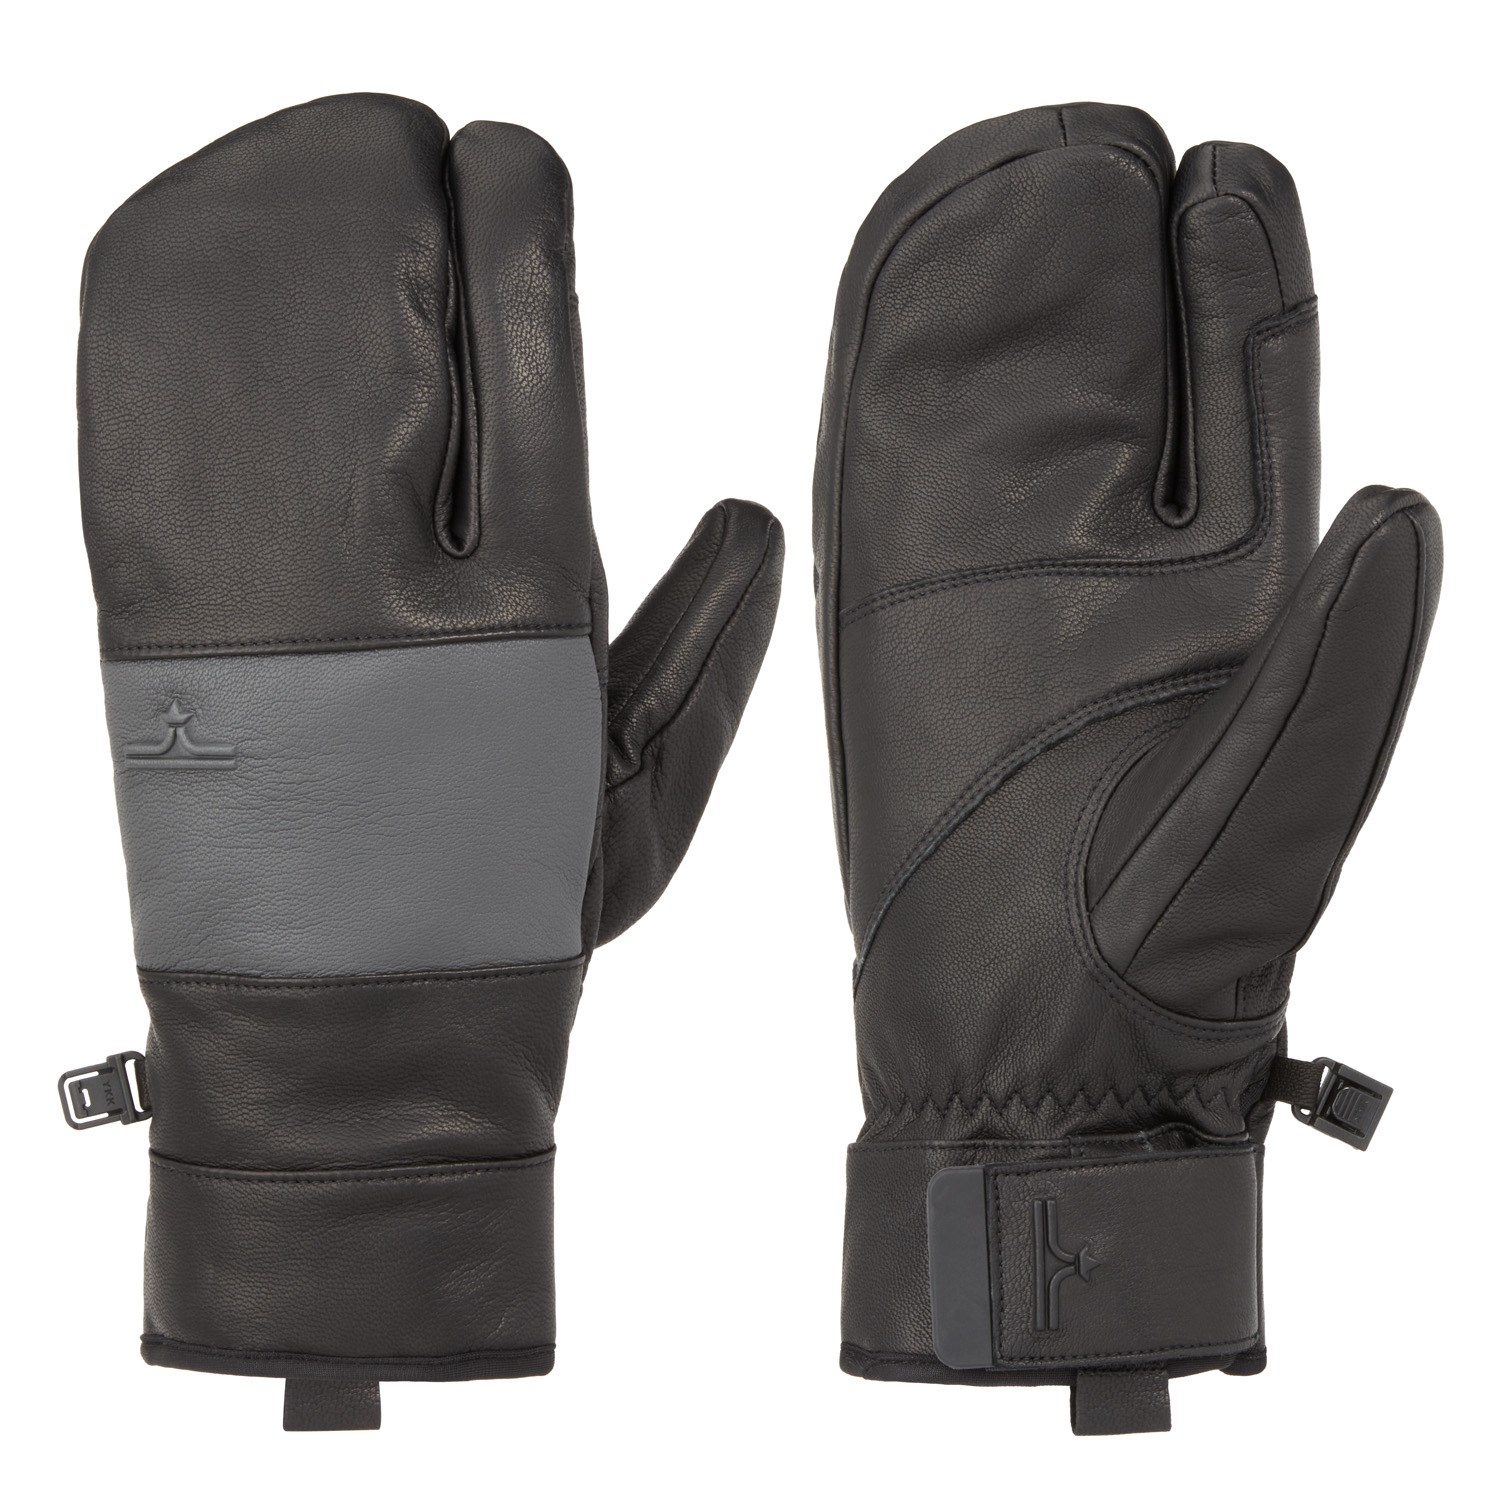 Рукавицы evo Pagosa Leather 3-Finger, цвет Black/Charcoal